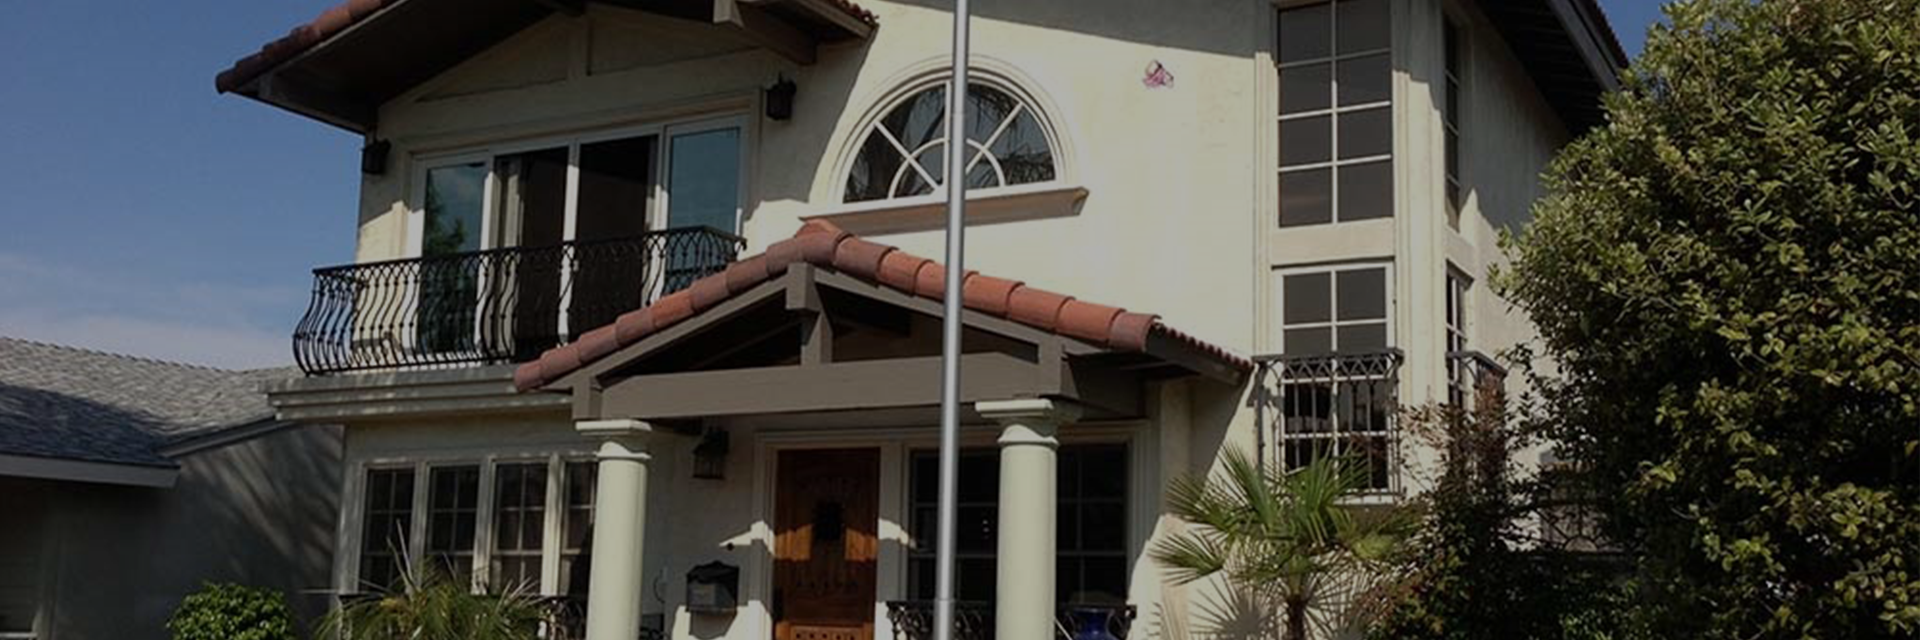 A Beautiful House in Coronado Banner